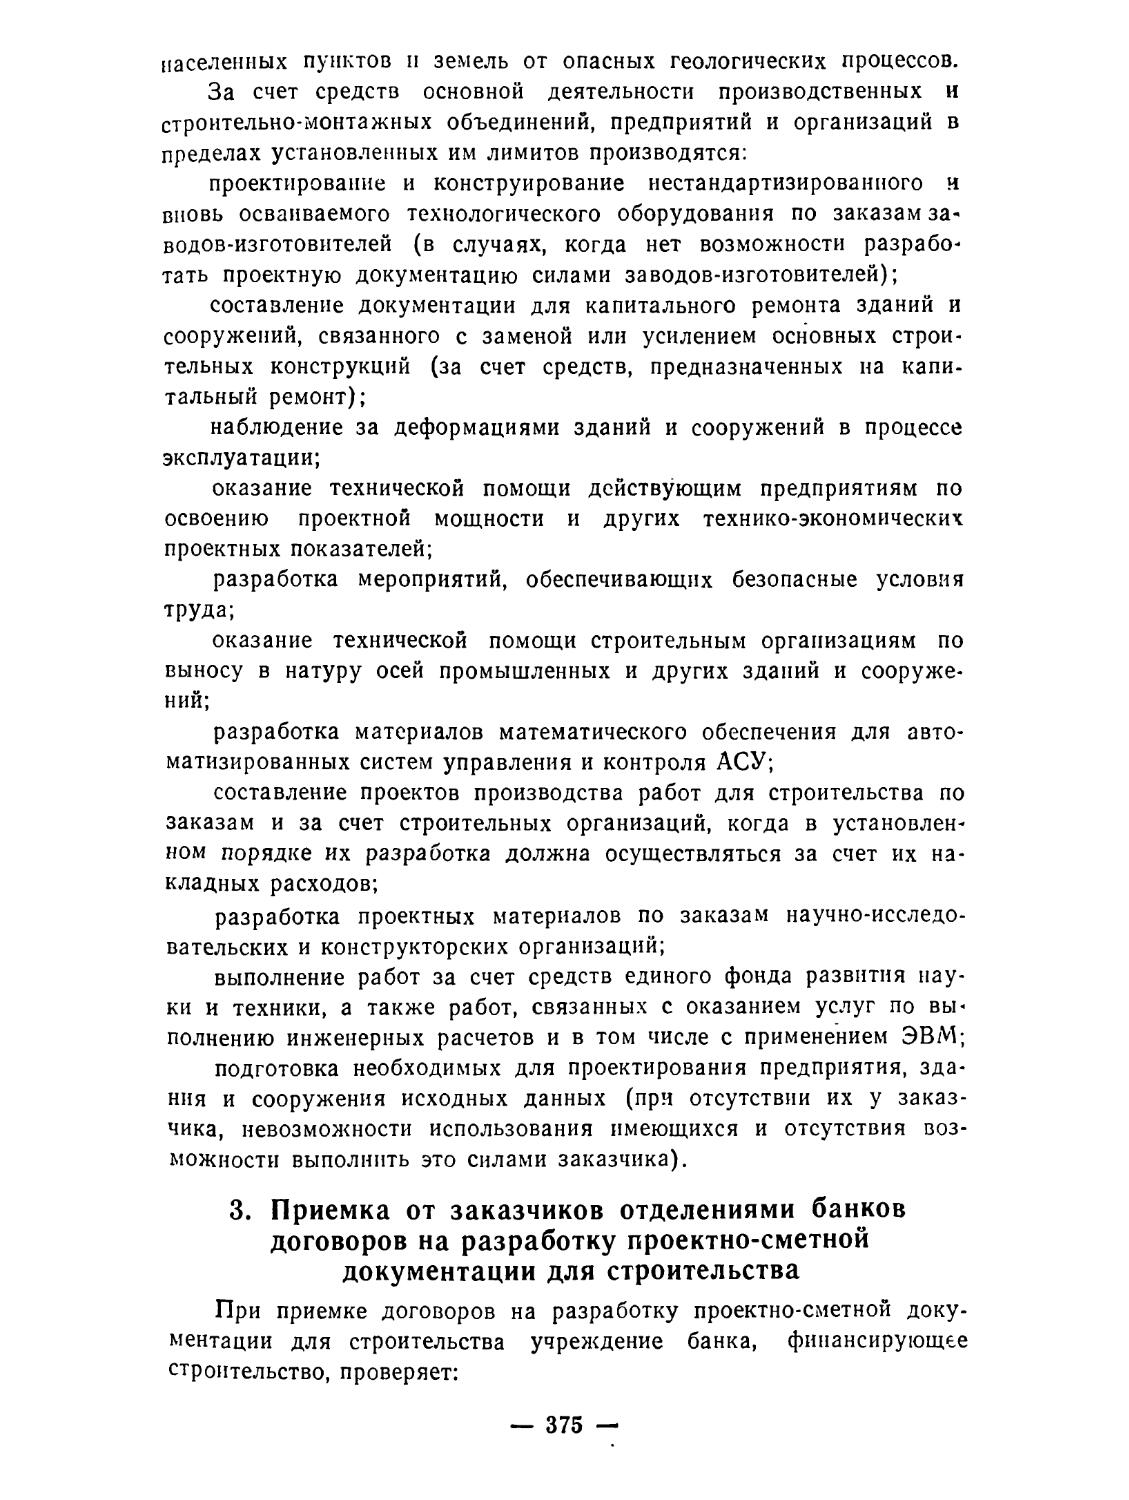 3. Приемка от заказчиков отделениями Госбанка СССР договоров на разработку проектно-сметной документации для строительства